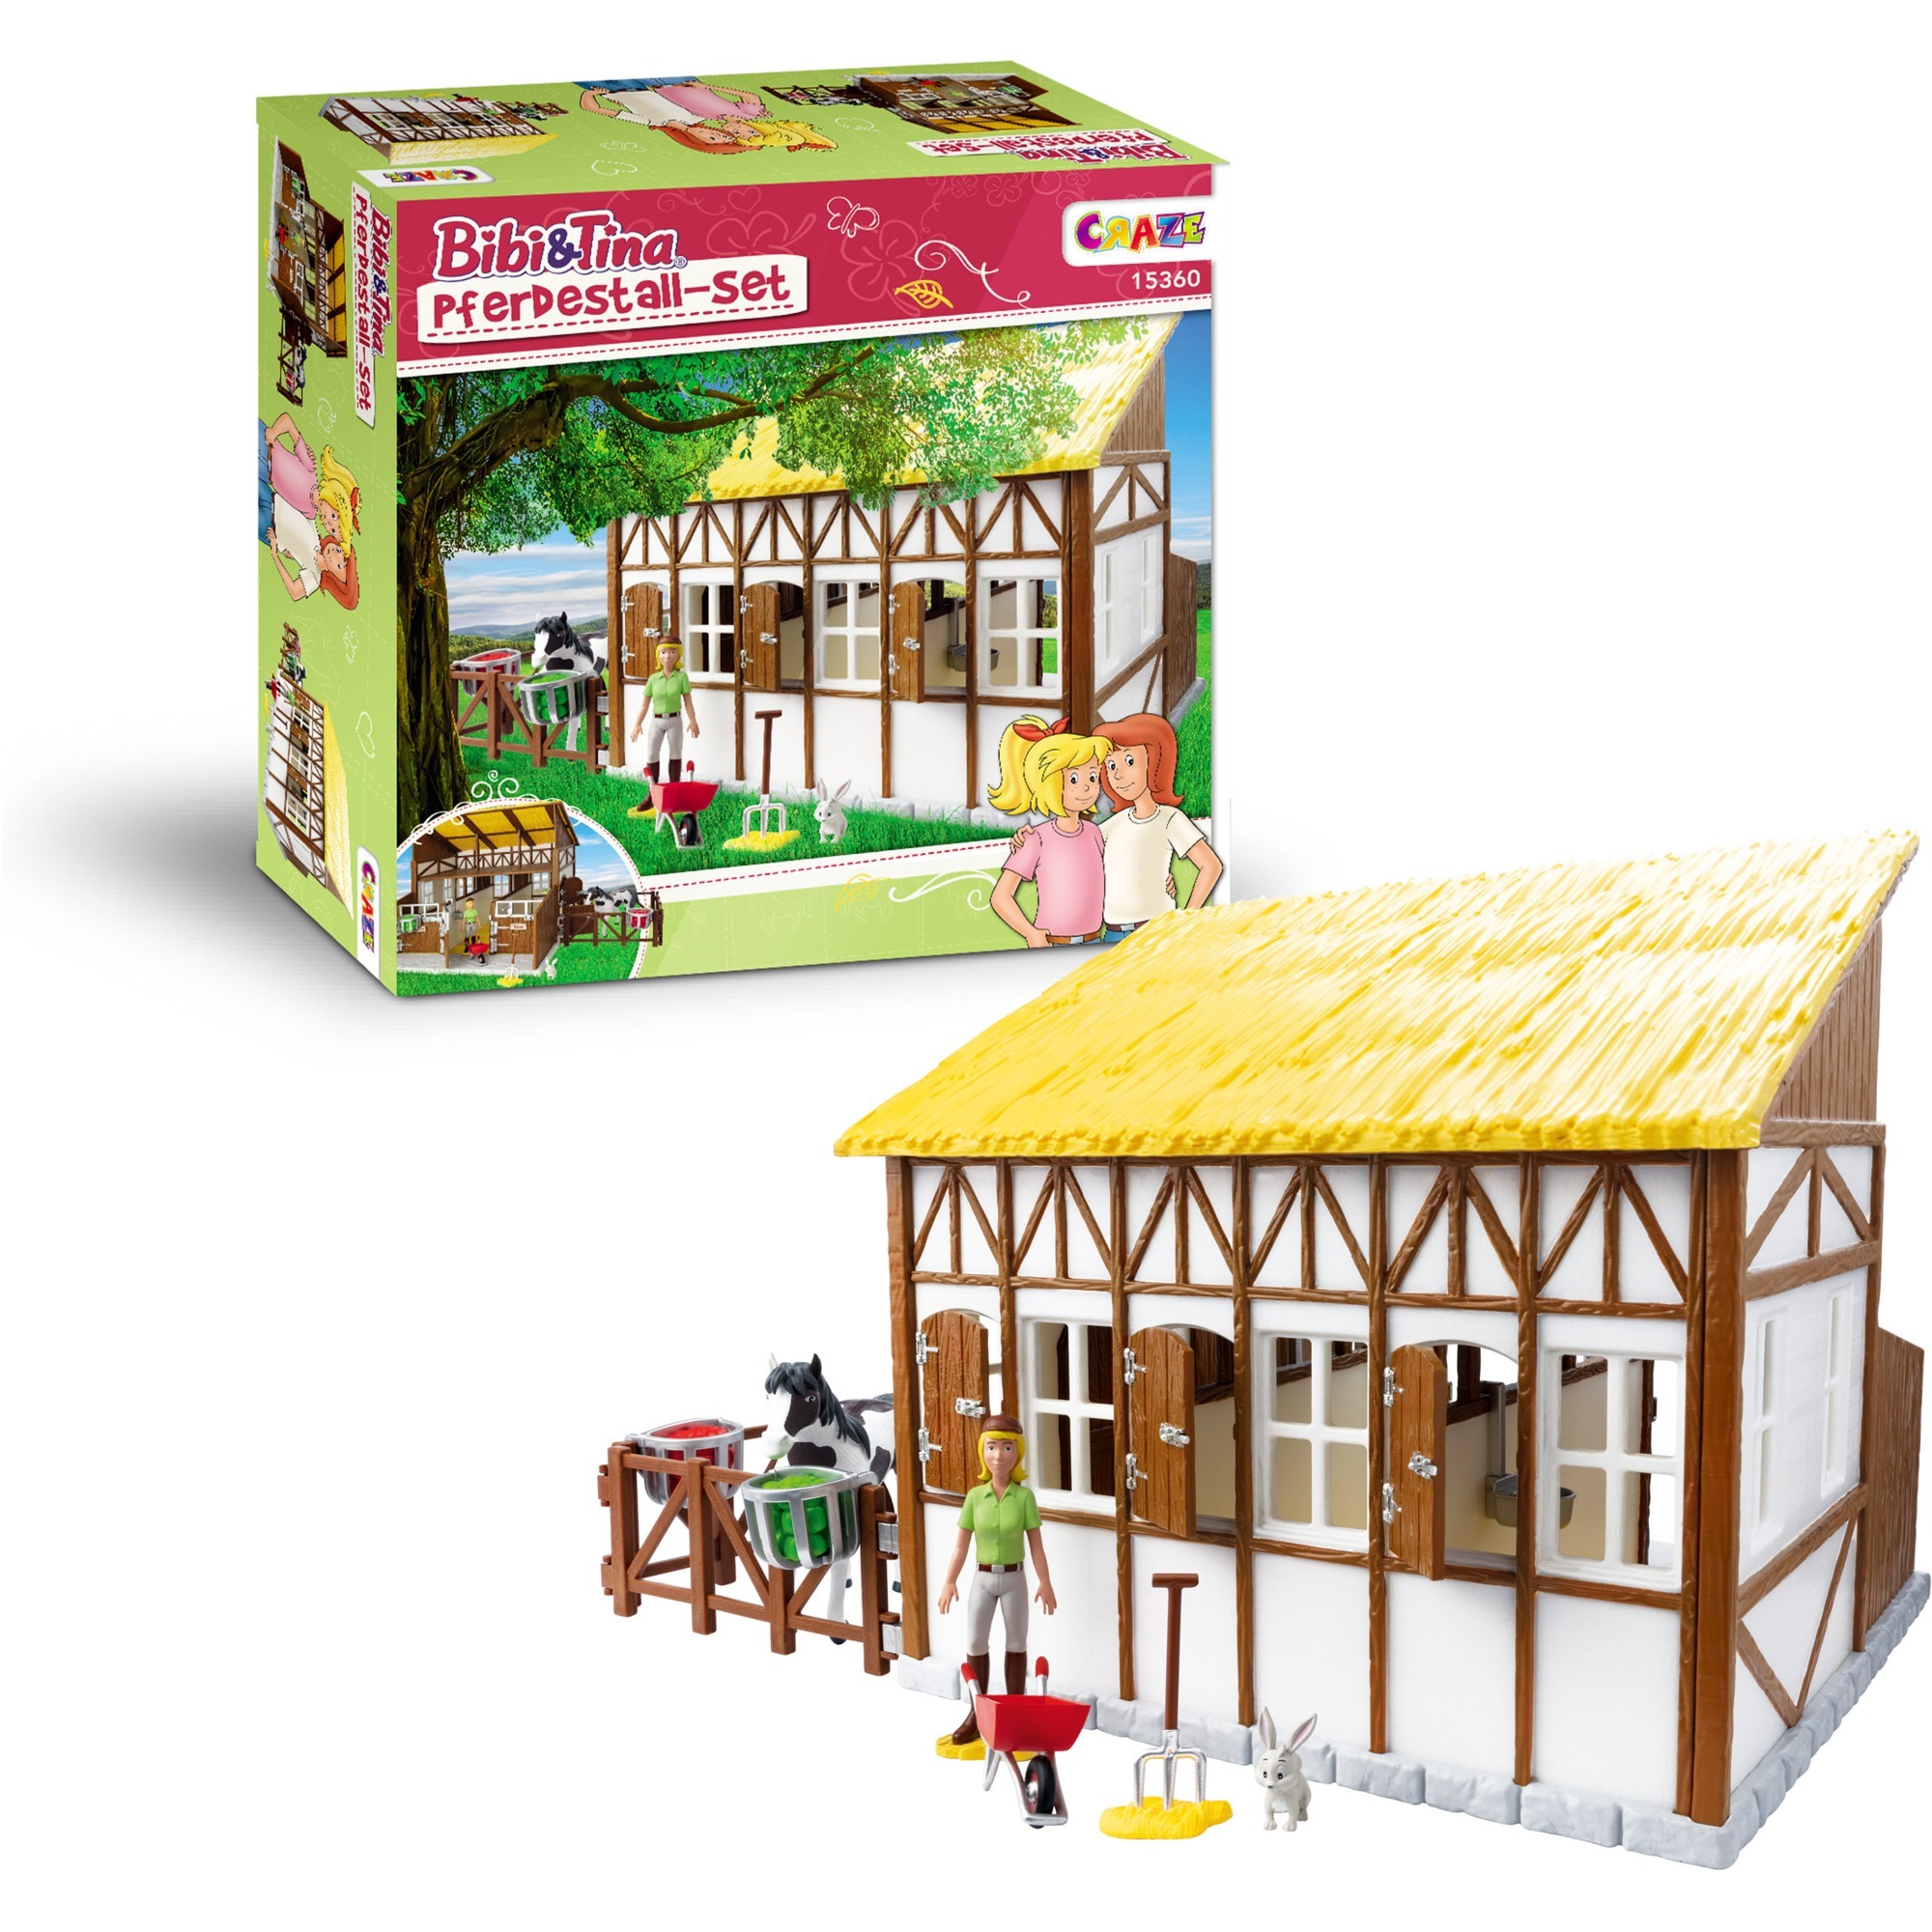 Image of Alternate - Bibi & Tina Pferdestall-Set mit Figuren, Spielfigur online einkaufen bei Alternate